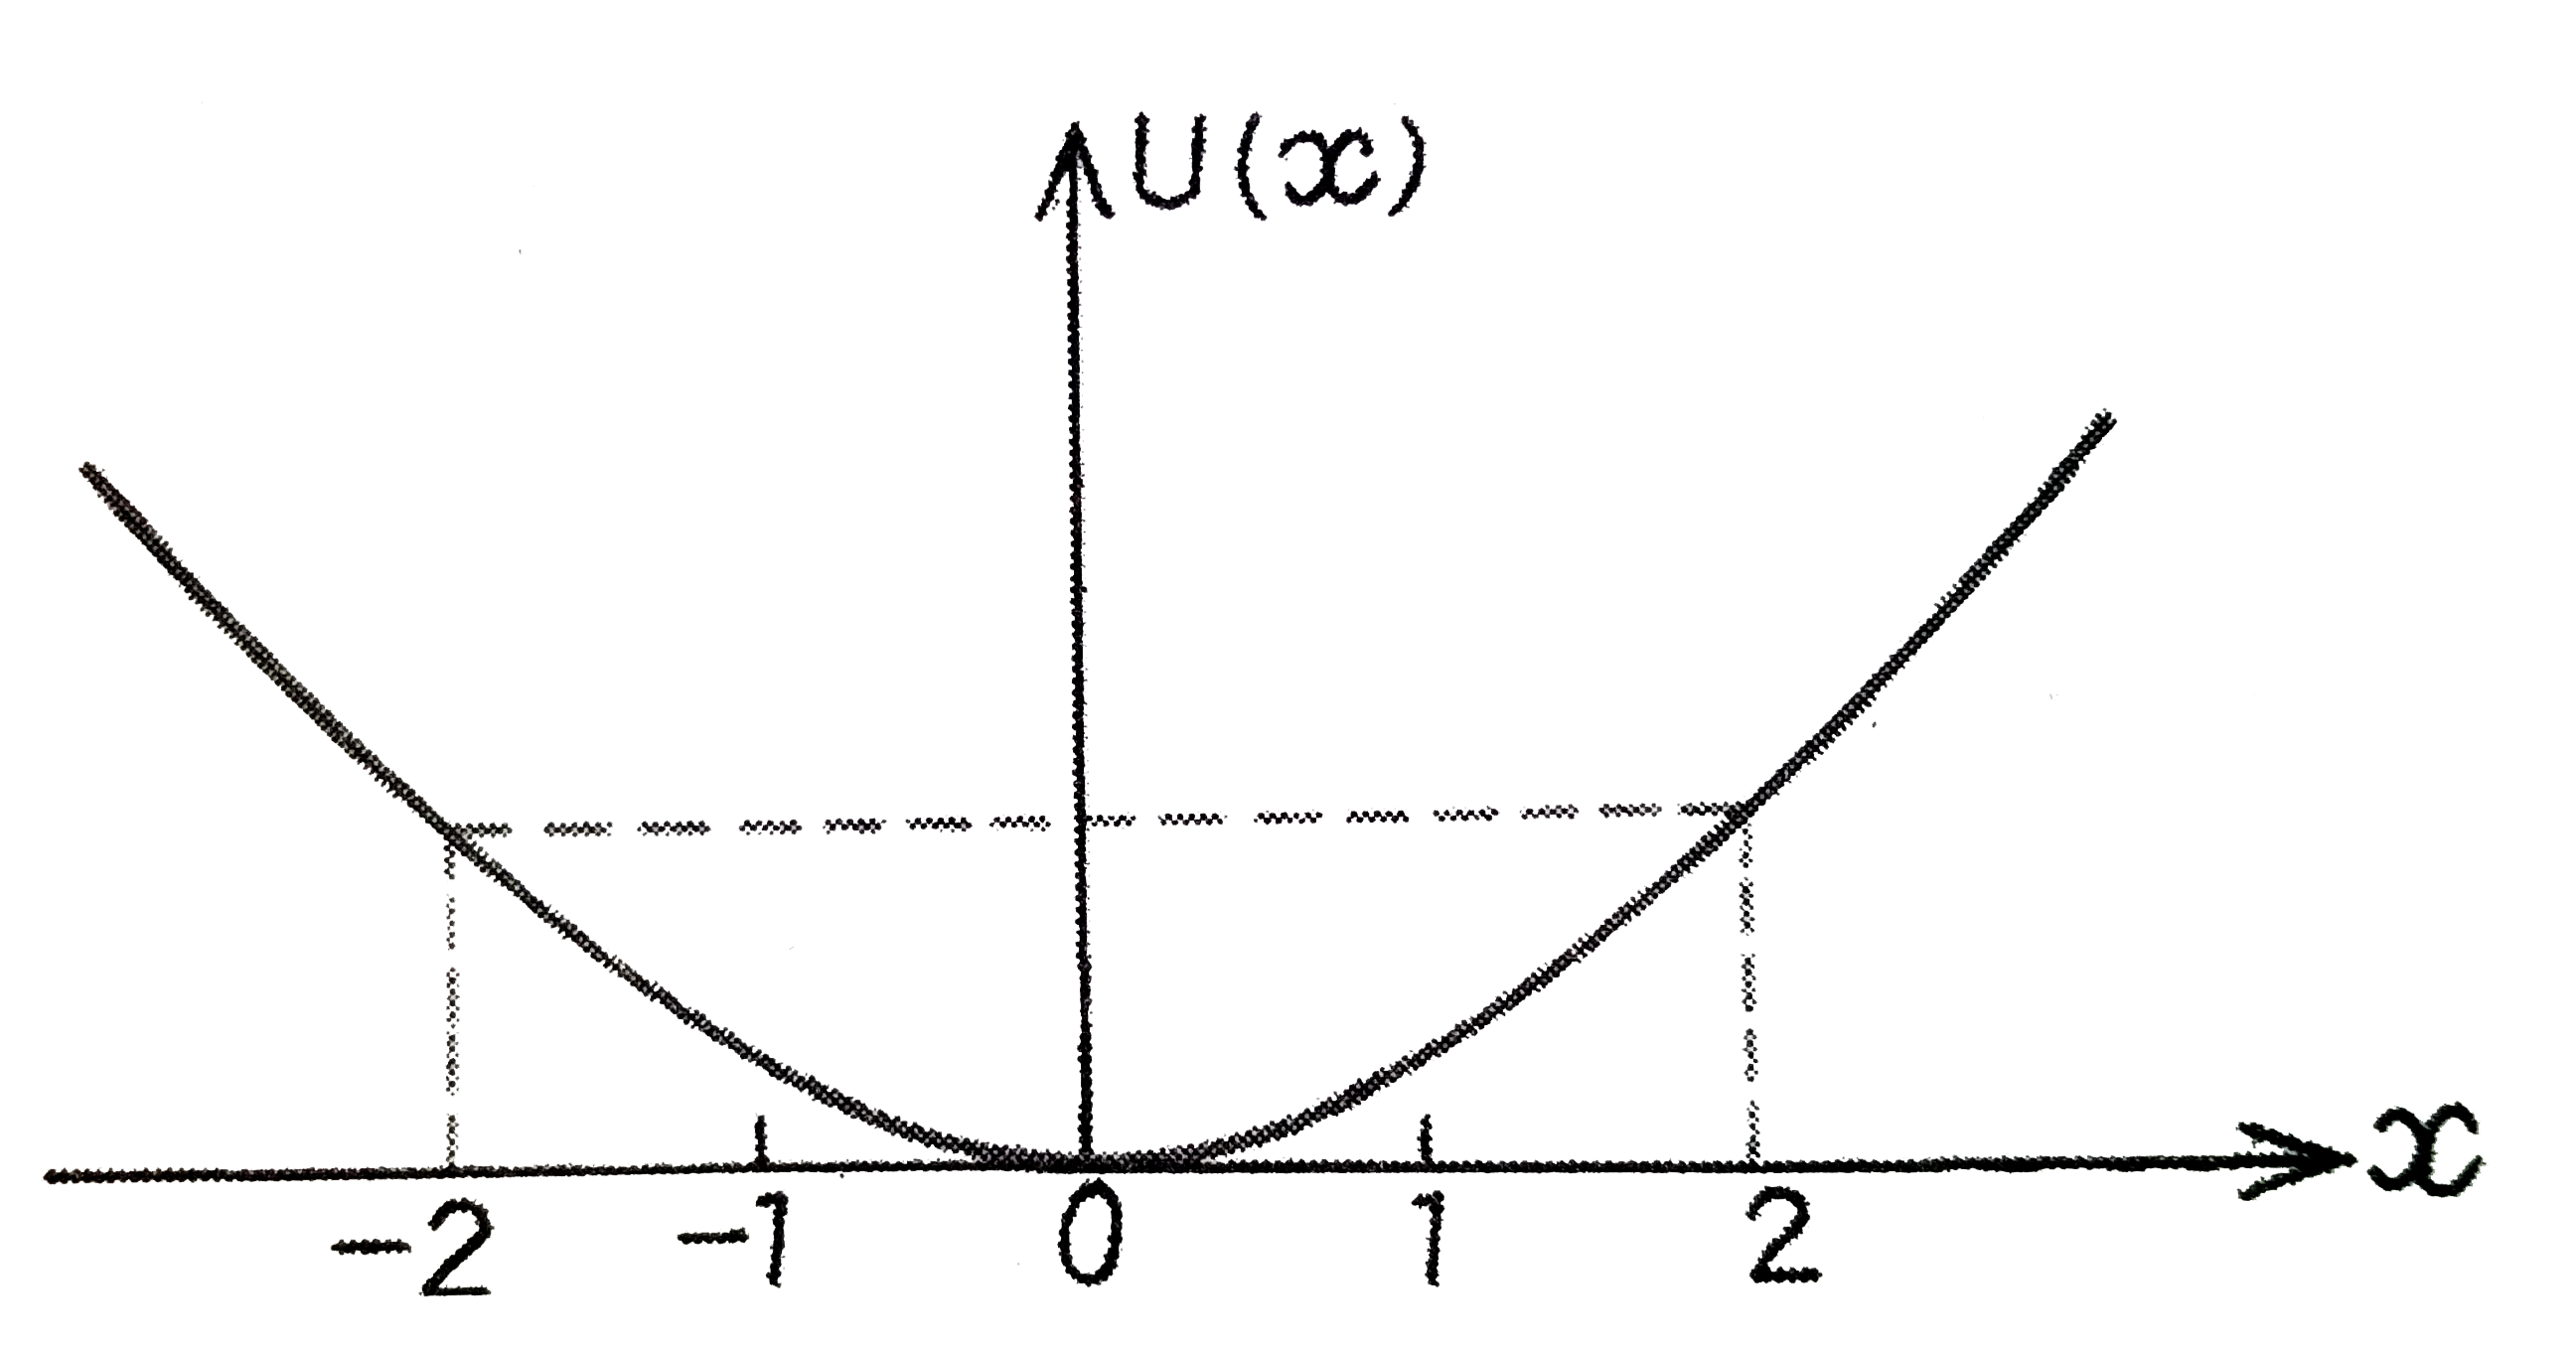 रेखीय सरल आवर्त गति कर रहे स्थितिज ऊर्जा फलन U(x)=kx^(2)//2  है, जहाँ k दोलक का बल नियतांक है।  k=0.5Nm^(-1) के लिए U(x) व x के मध्य ग्राफ चित्र में दिखाया गया है। यह दिखाइए कि इस विभव के अंतर्गत गतिमान कुल 1 J ऊर्जा वाले कण को अवश्य ही 'वापस आना' चाहिए जब यह x=pm2m पर पहुँचता है।